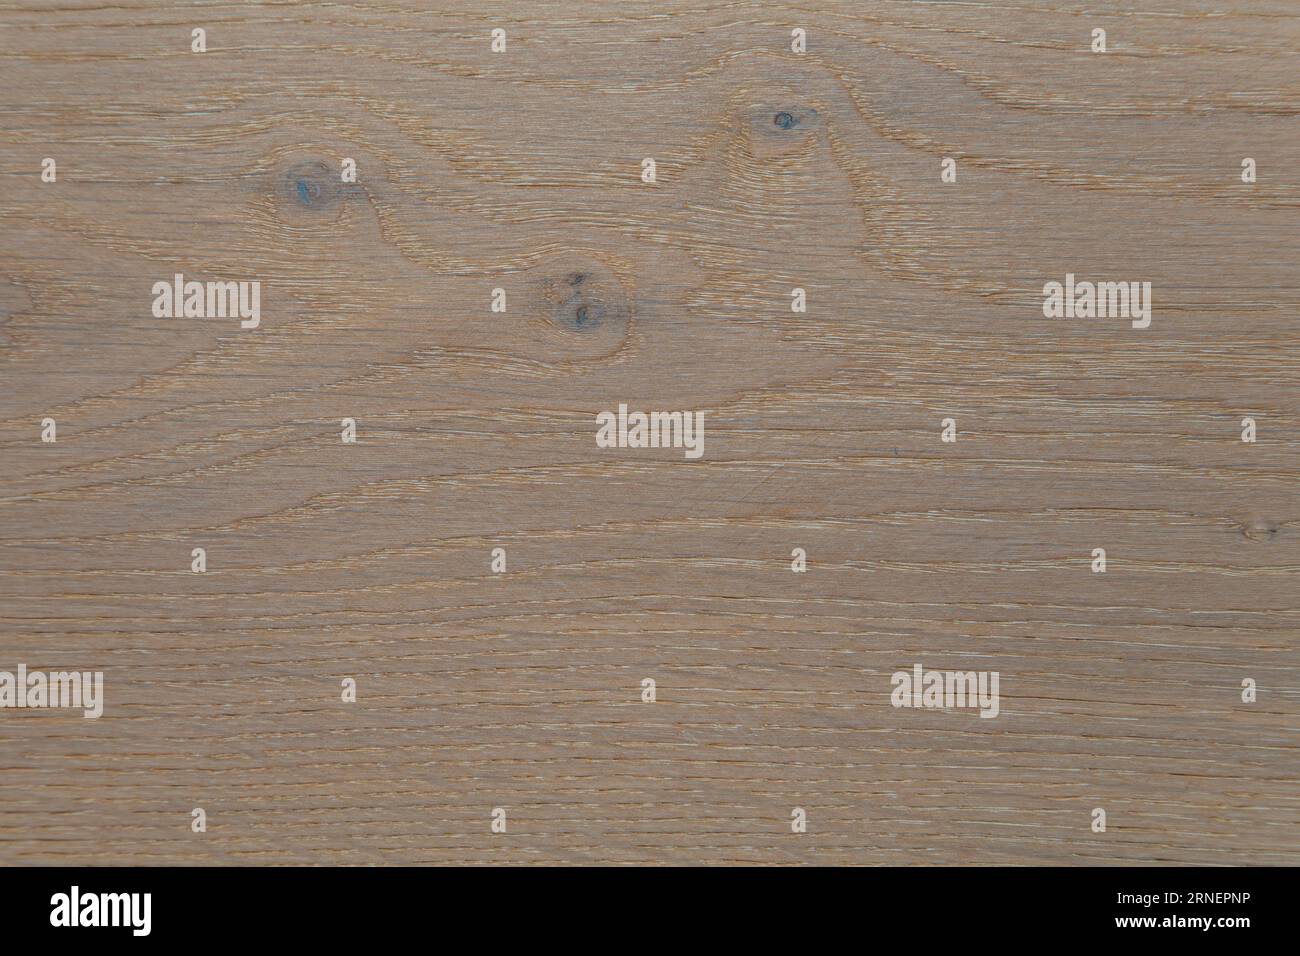 texture of legno quercia california paese casa di campagna parquet a pannelli fatto per pavimenti e pareti campione Foto Stock